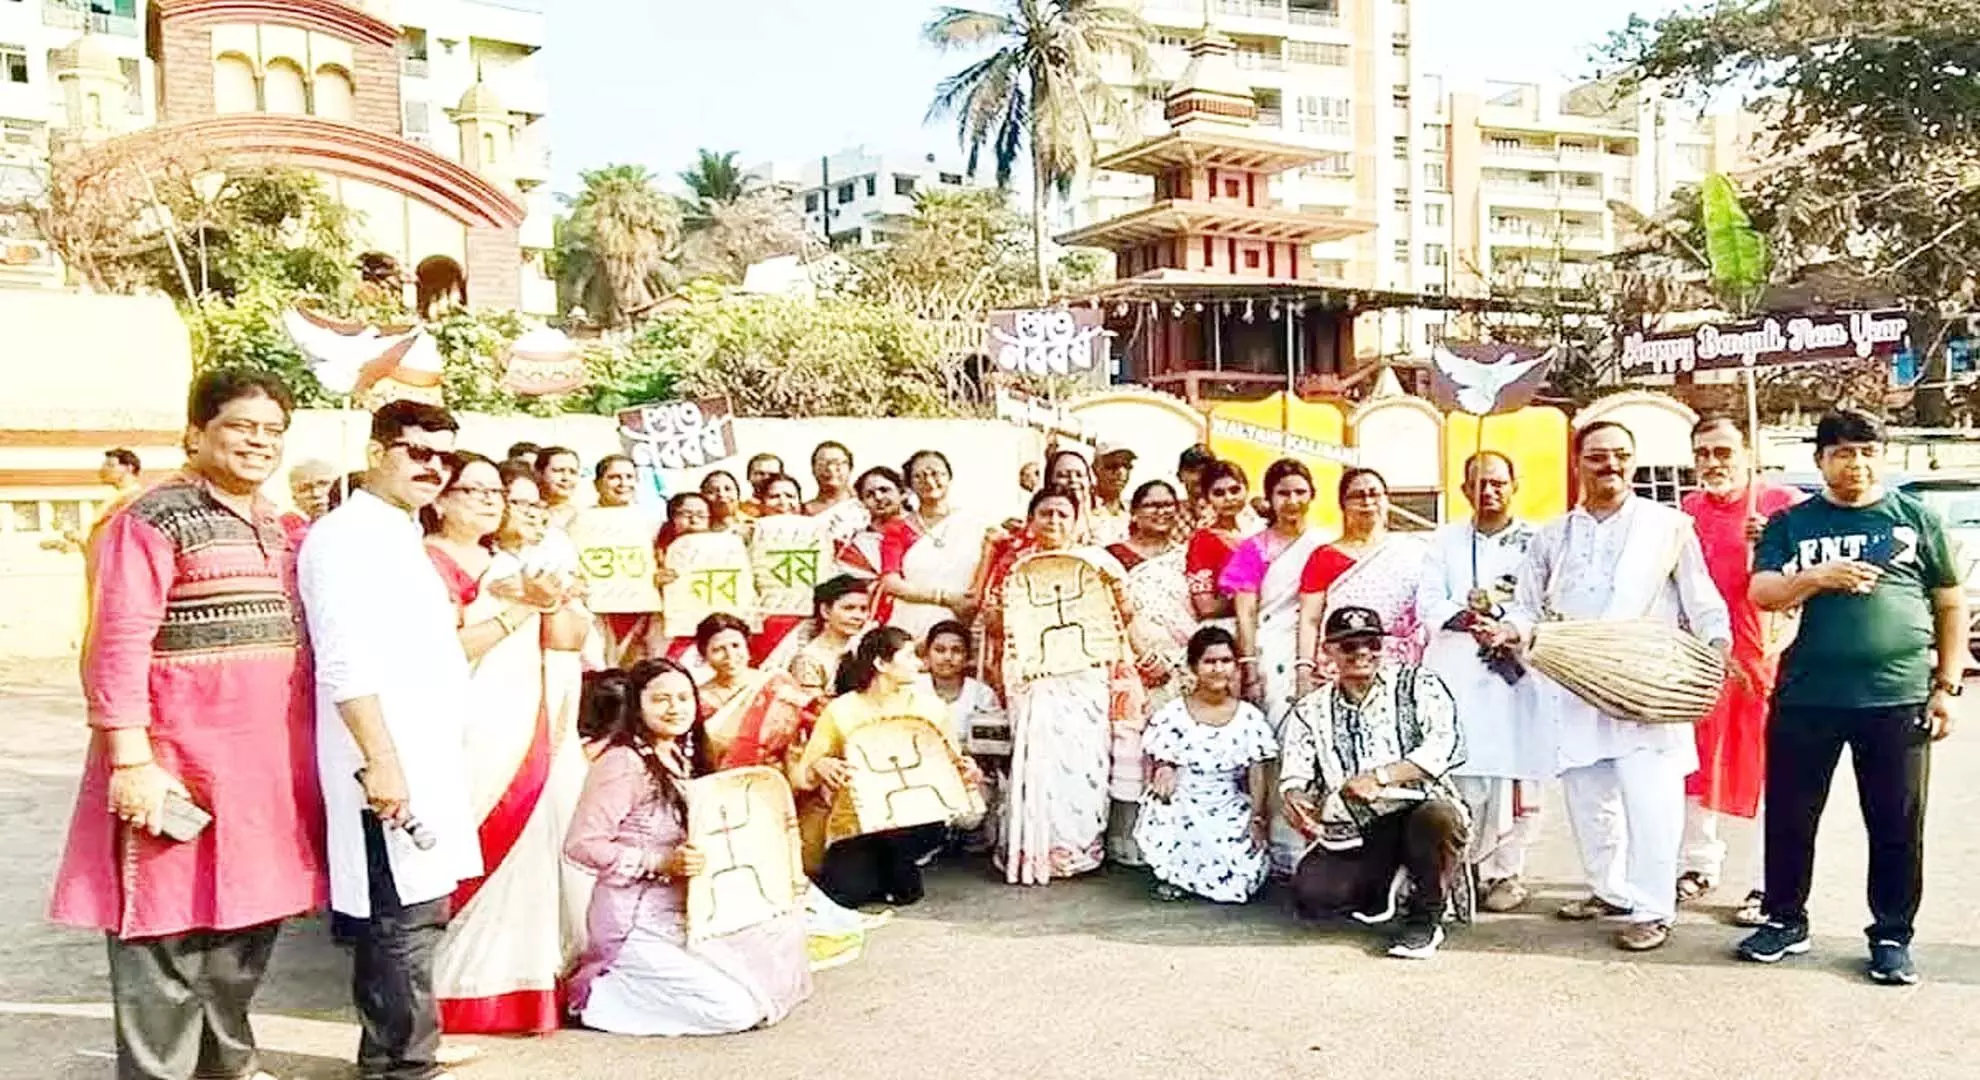 विशाखापत्तनम: बंगाली शुभो नबाबरशो मनाते हैं, नए साल का स्वागत करते हैं